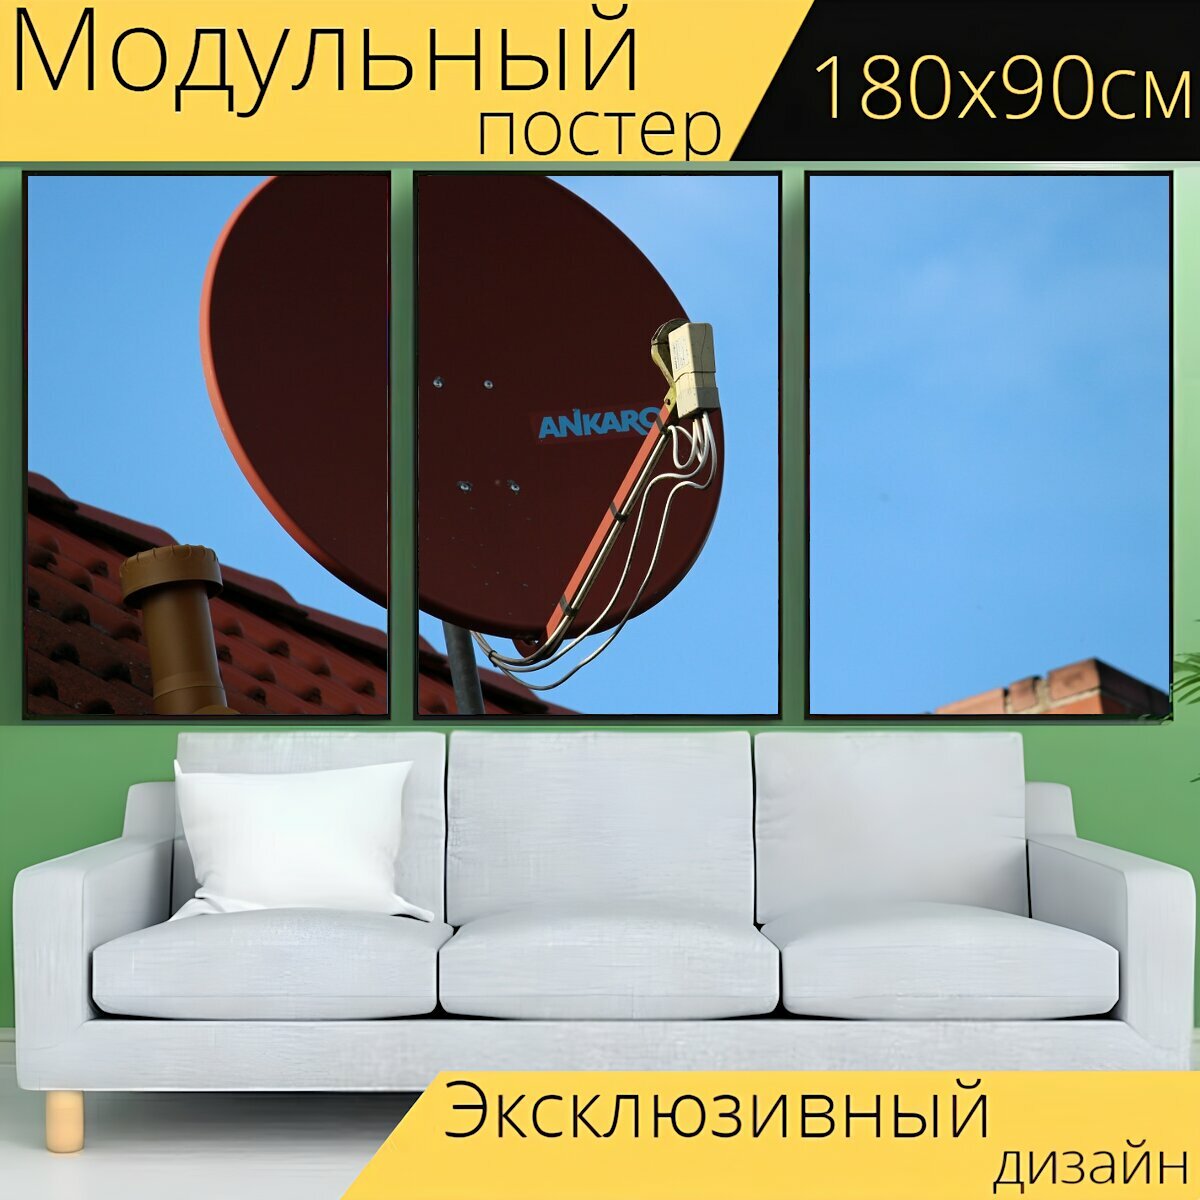 Модульный постер "Спутниковая тарелка, антенна, ключ" 180 x 90 см. для интерьера